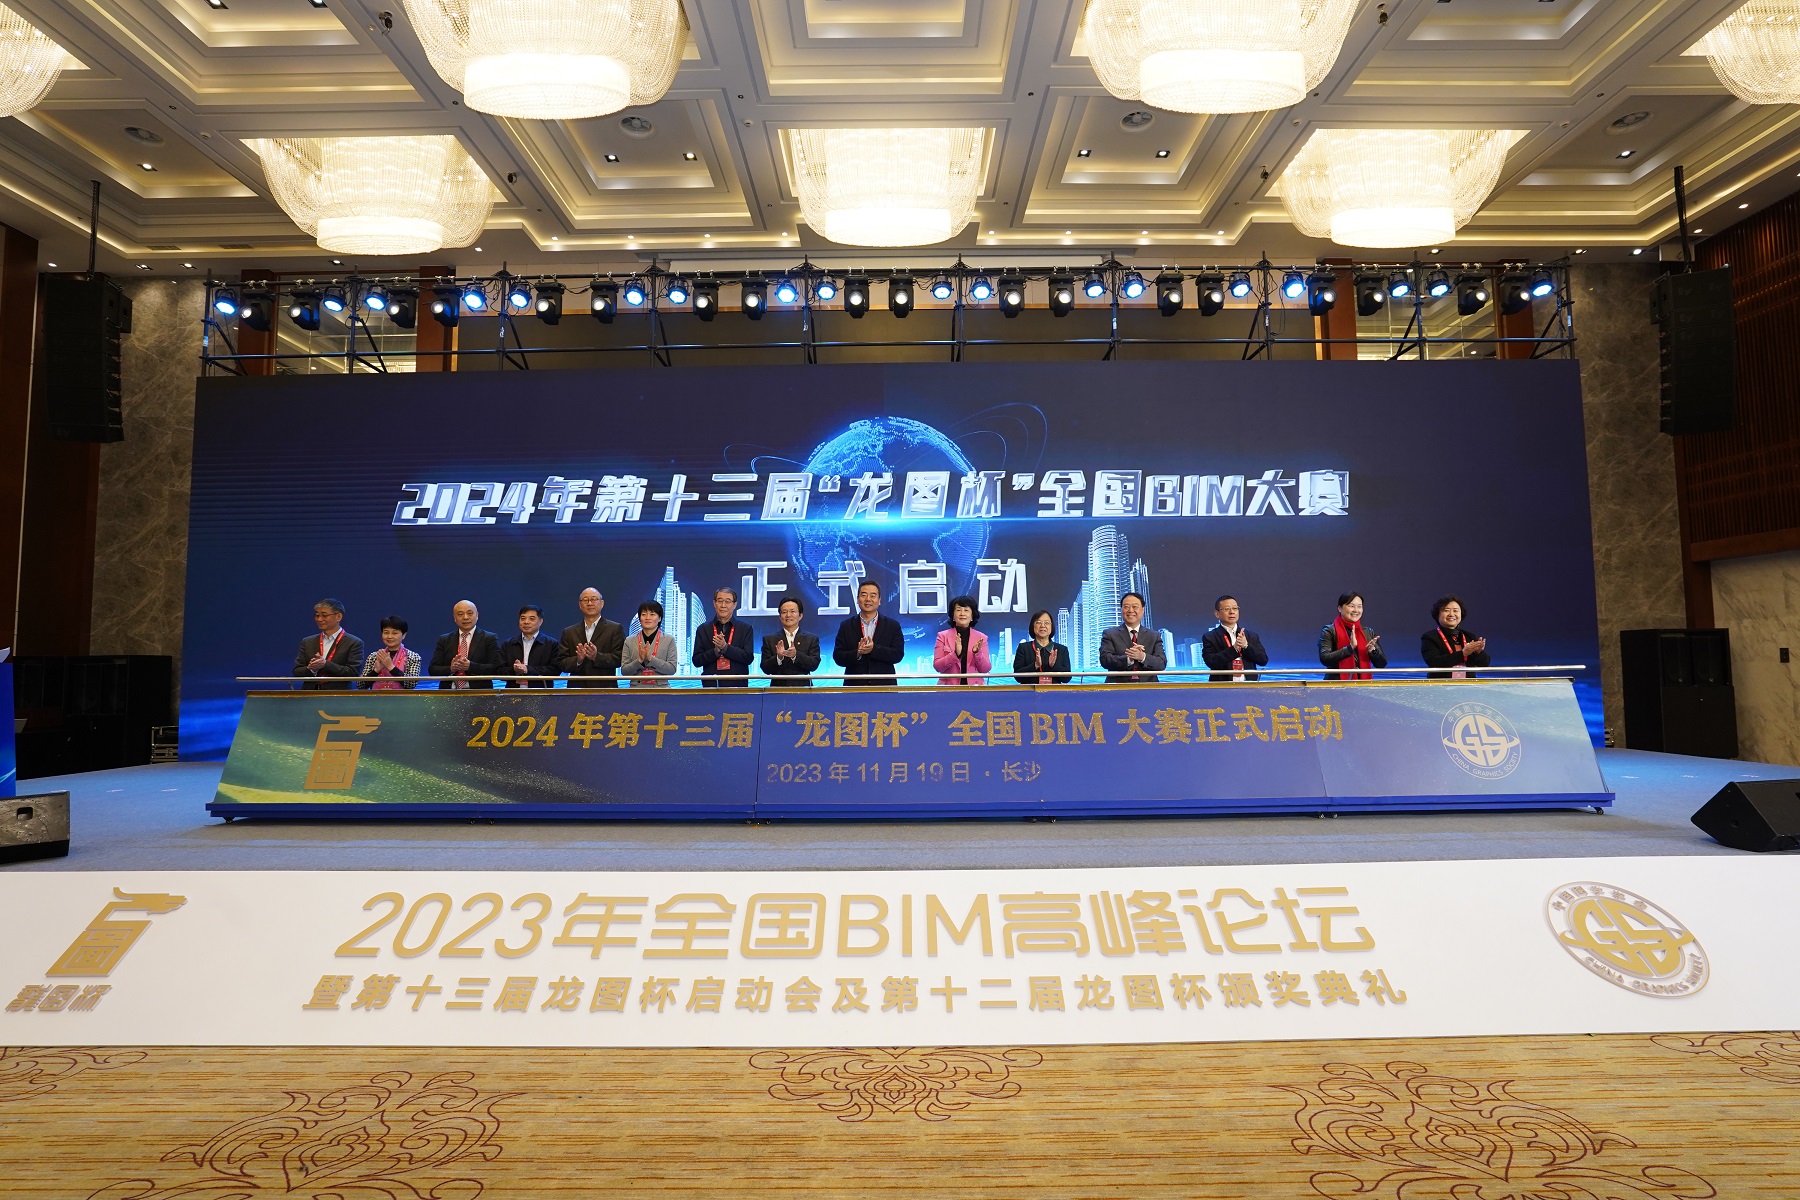 聚焦智能建造助力建设智慧城市 2023年全国BIM高峰论坛举办